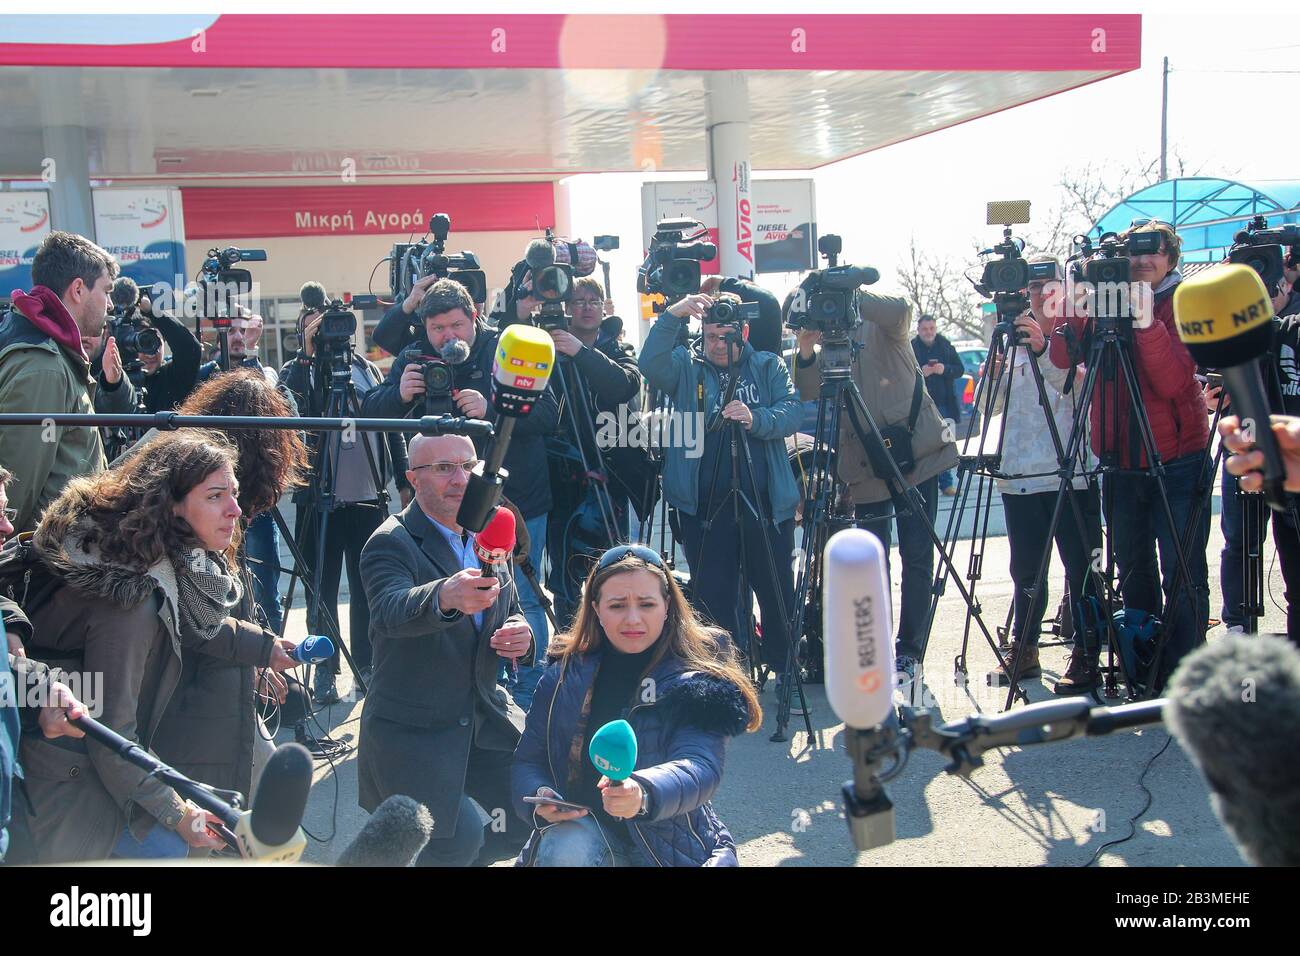 Kastanies, Evros, Grecia - 1 marzo 2020: Giornalisti, troupe televisive e fotogiornalismo da tutto il mondo si sono riuniti presso il greco-turco Foto Stock